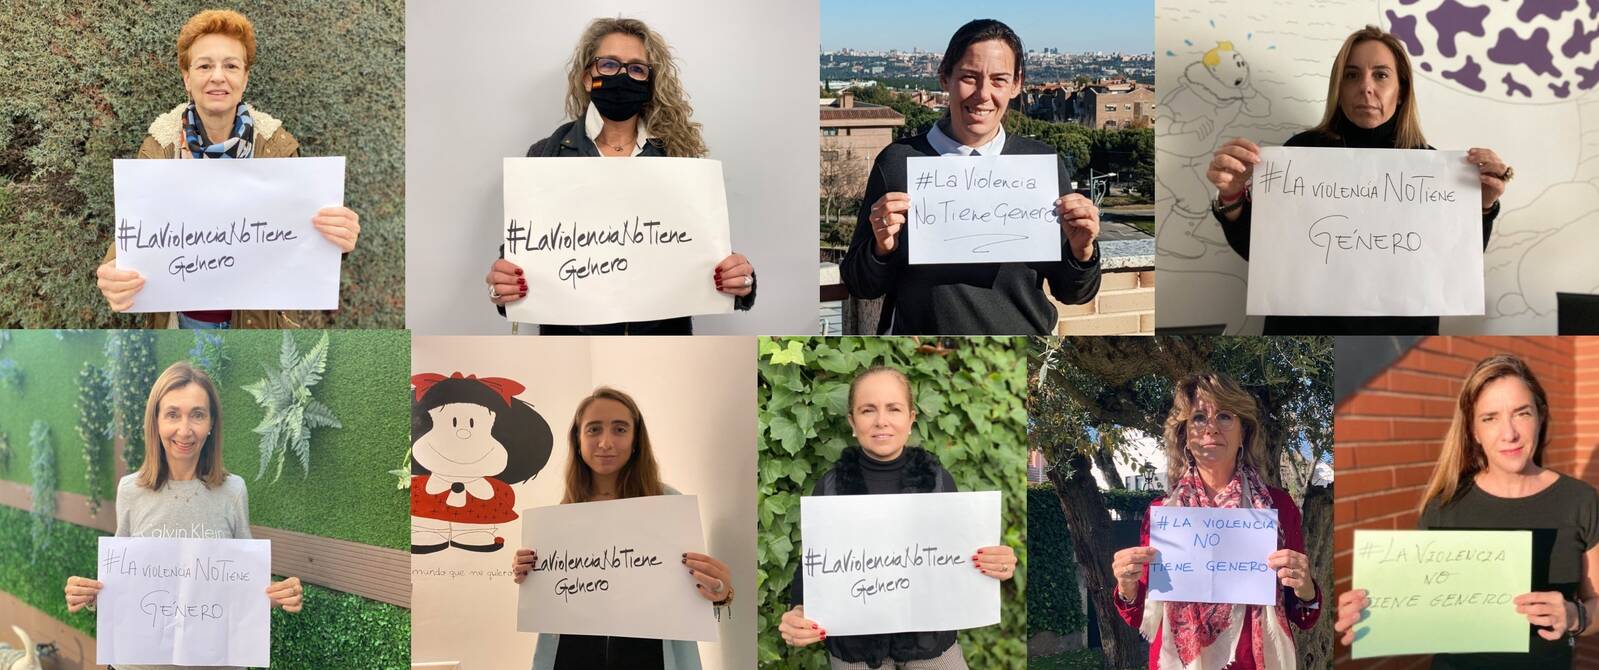 VOX Pozuelo promueve la campaña #LaViolenciaNoTieneGénero